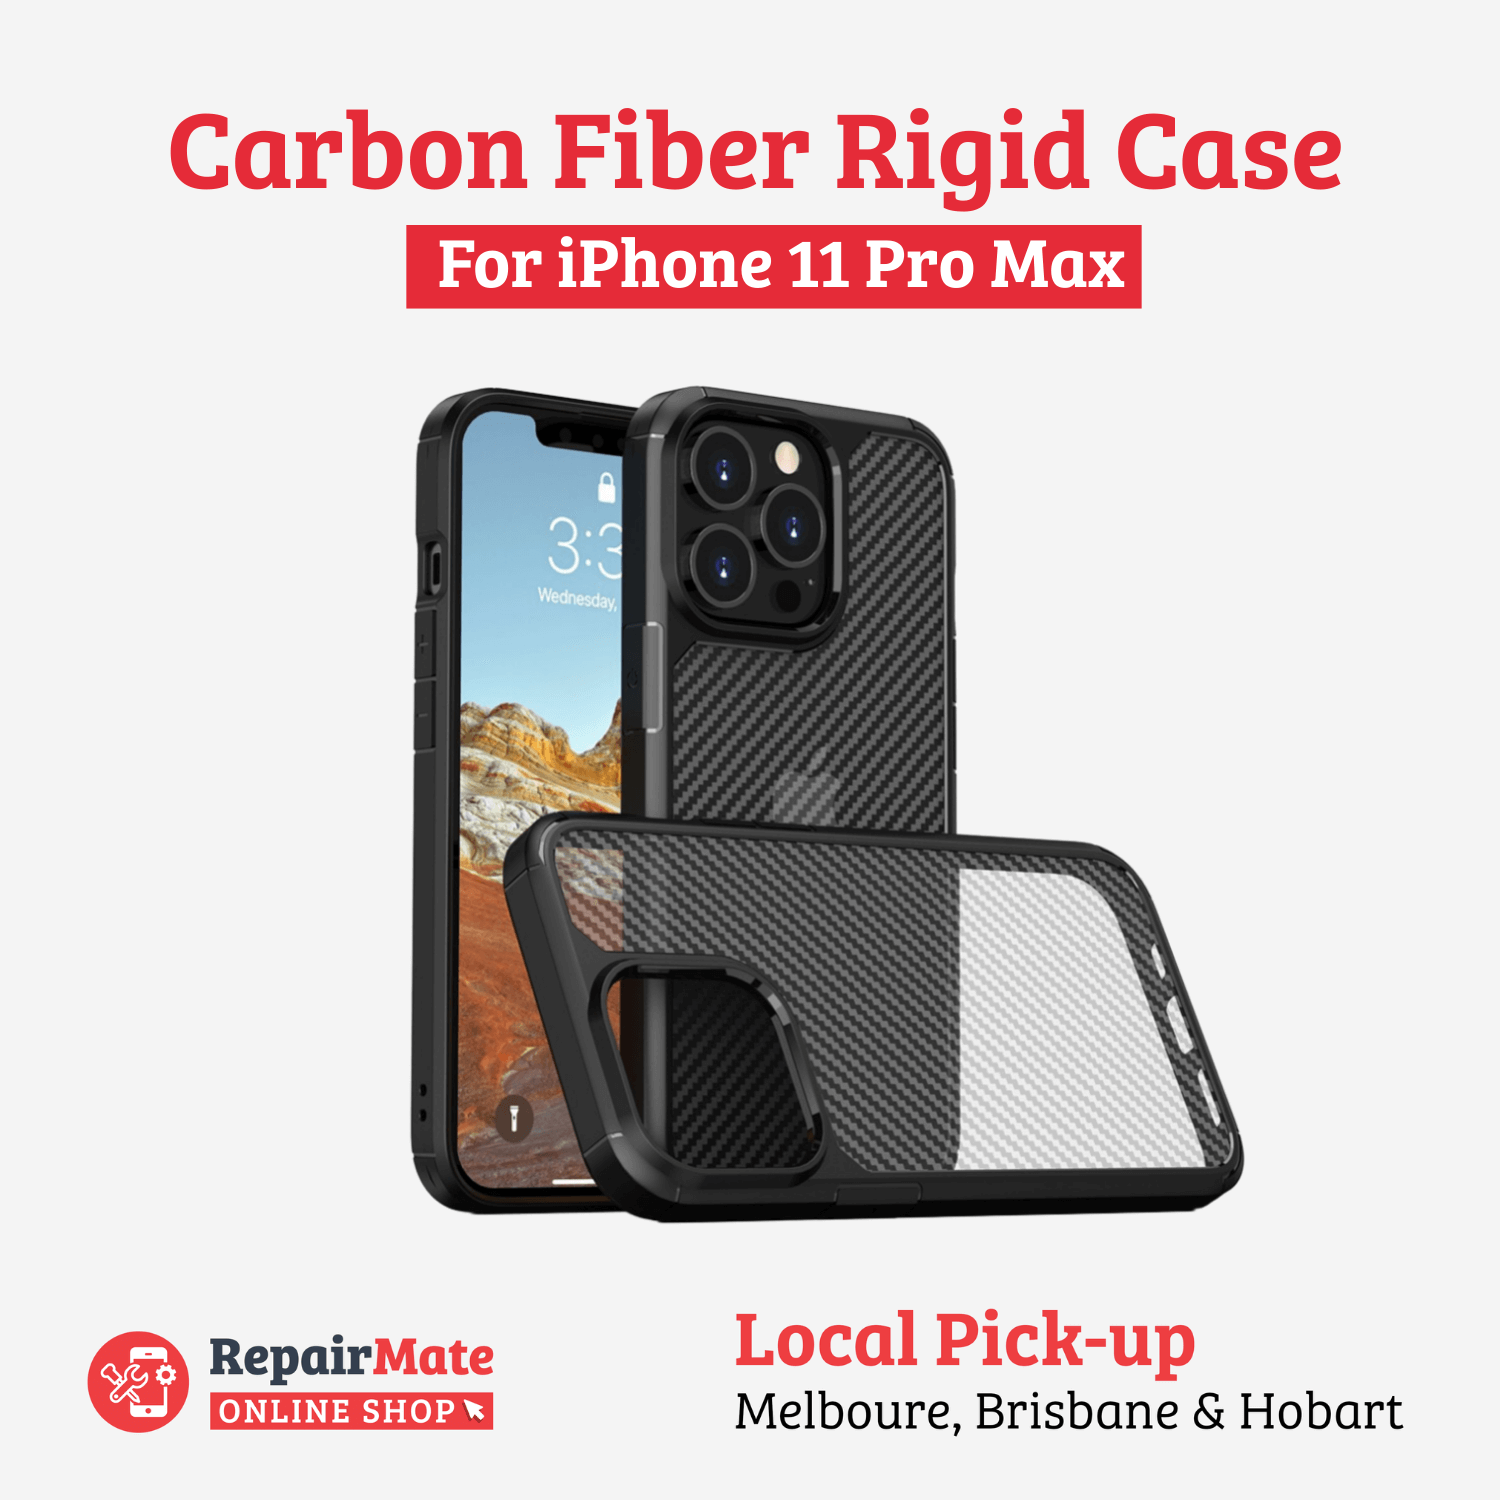 iPhone 11 Pro Max Carbon Fiber Rigid Case Cover